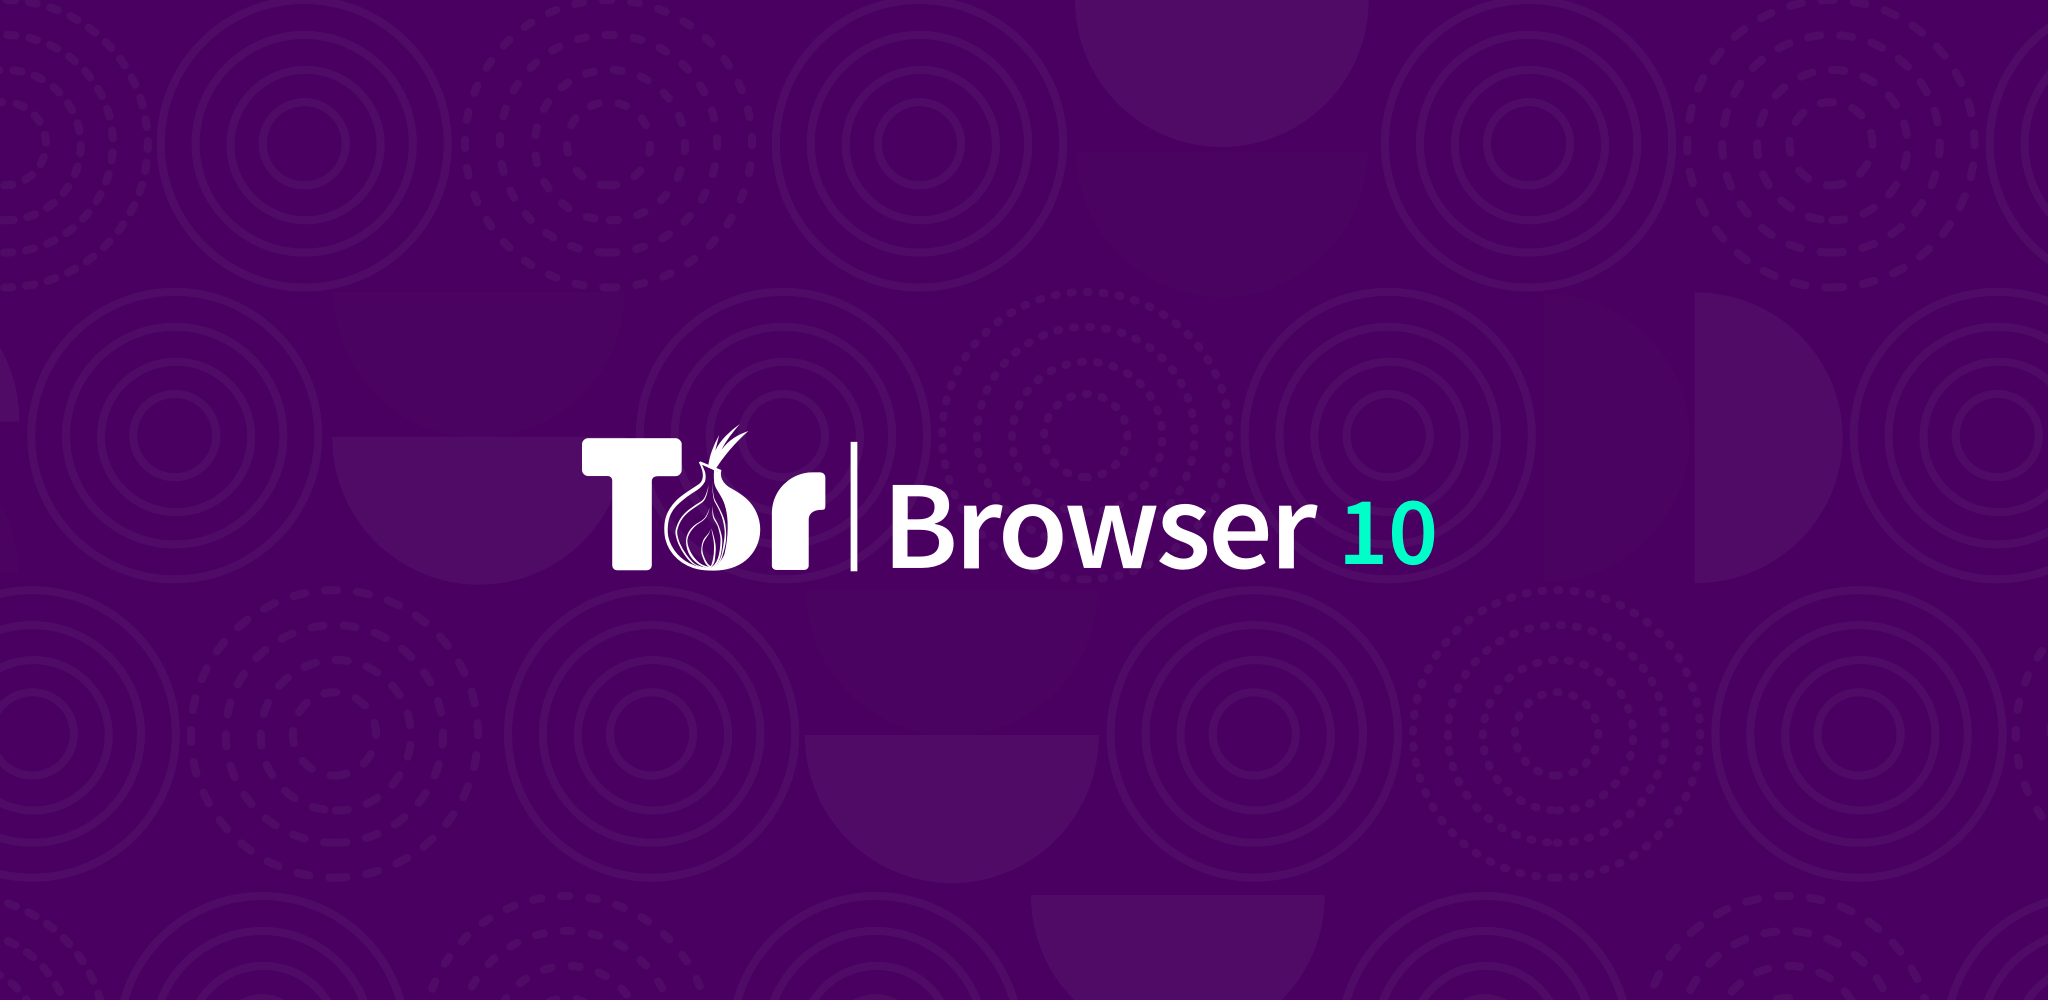 Tor browser скачать бесплатно тор браузер не законен